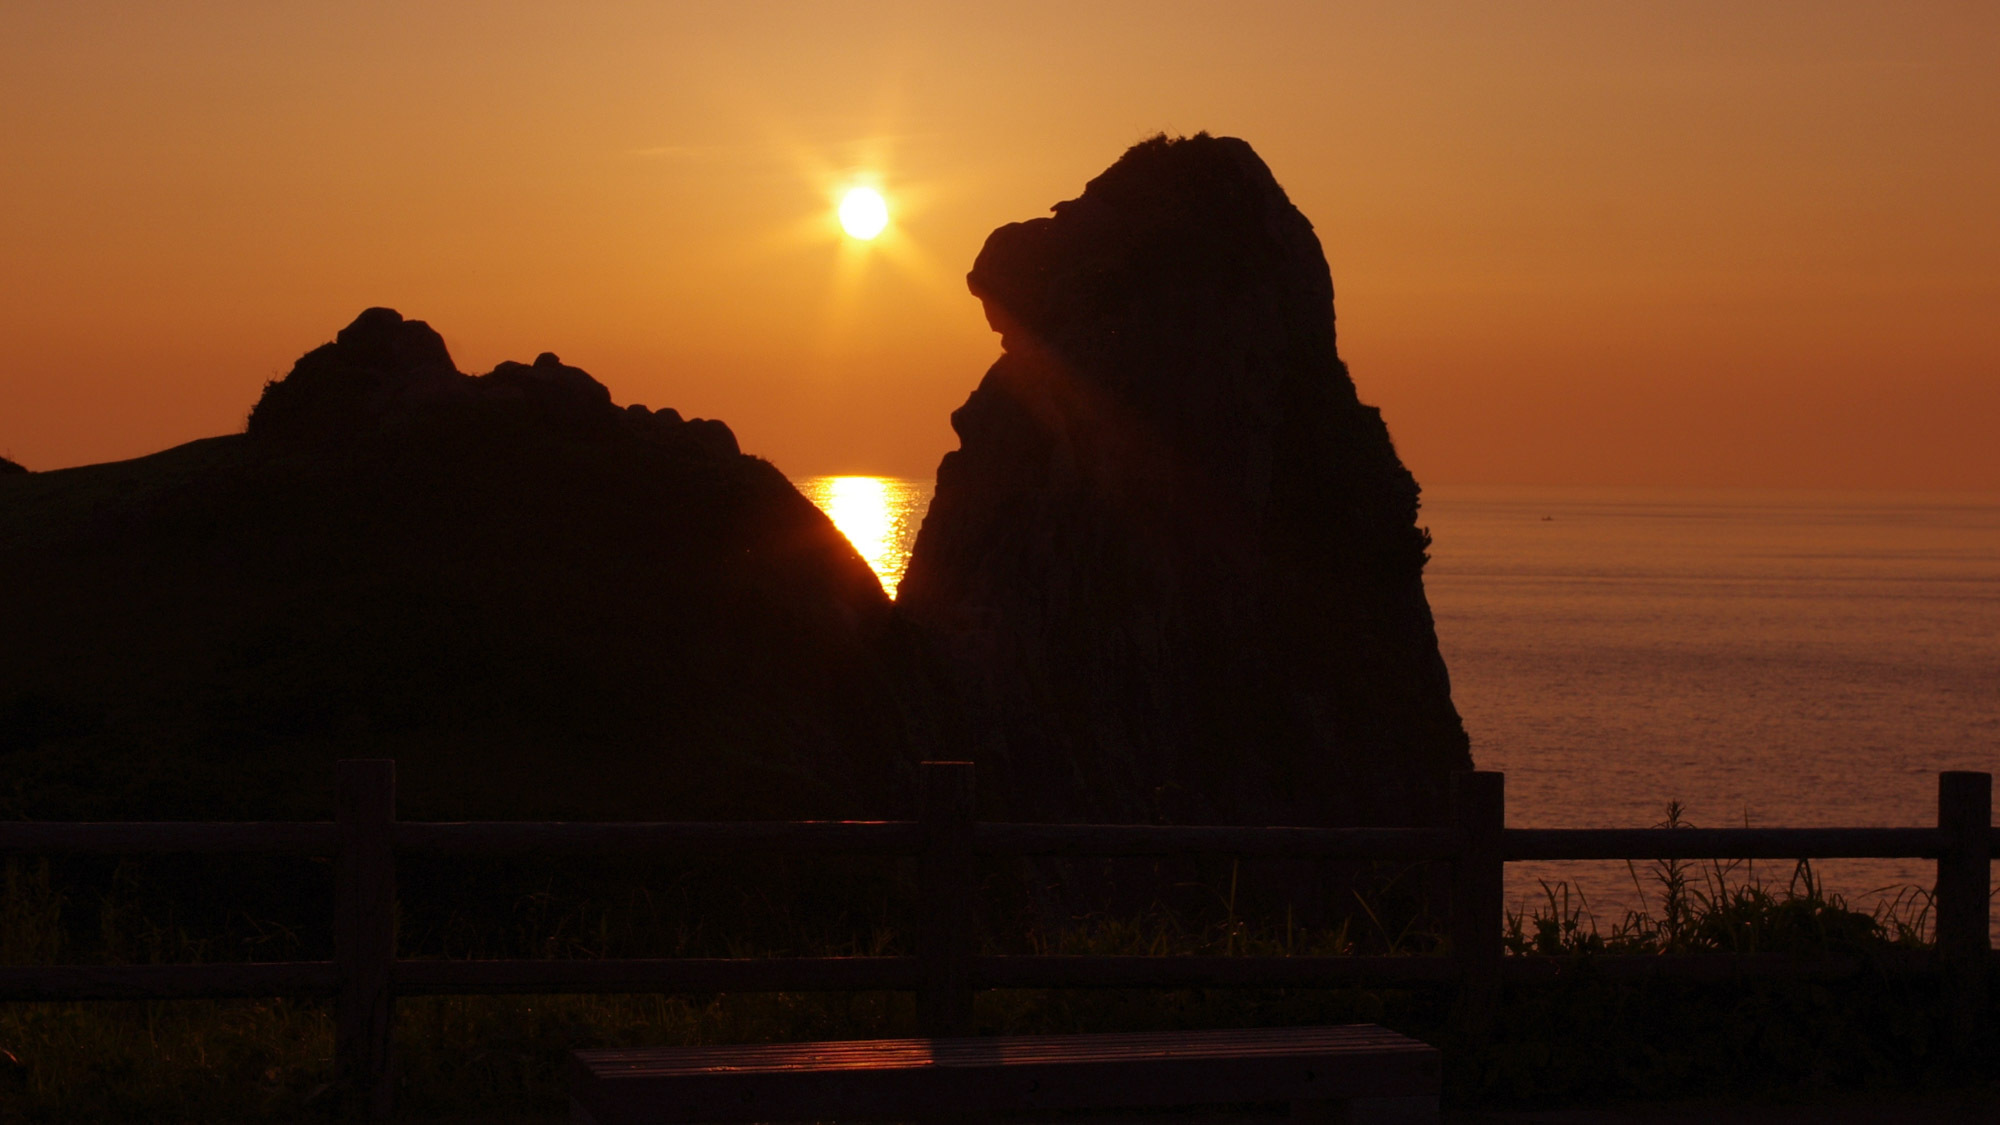 *【猿岩】高さ45ｍの巨大な猿のユニークな形はもちろん、岩越に見える美しい夕陽の絶景も注目。